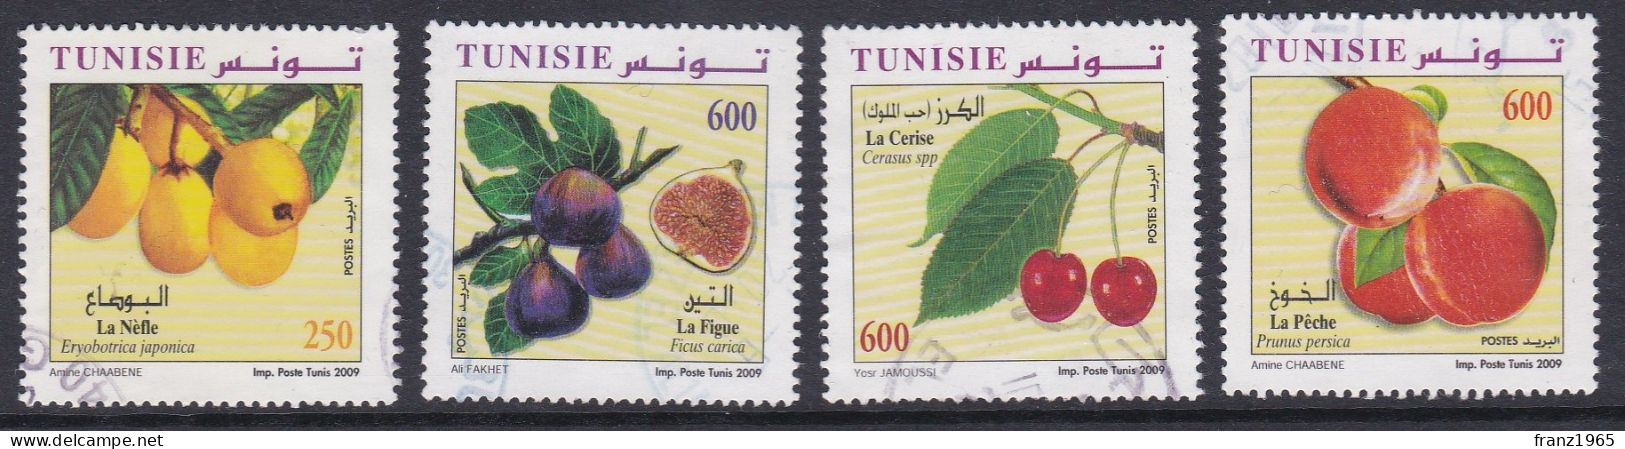 Fruits - 2009 - Tunisia (1956-...)